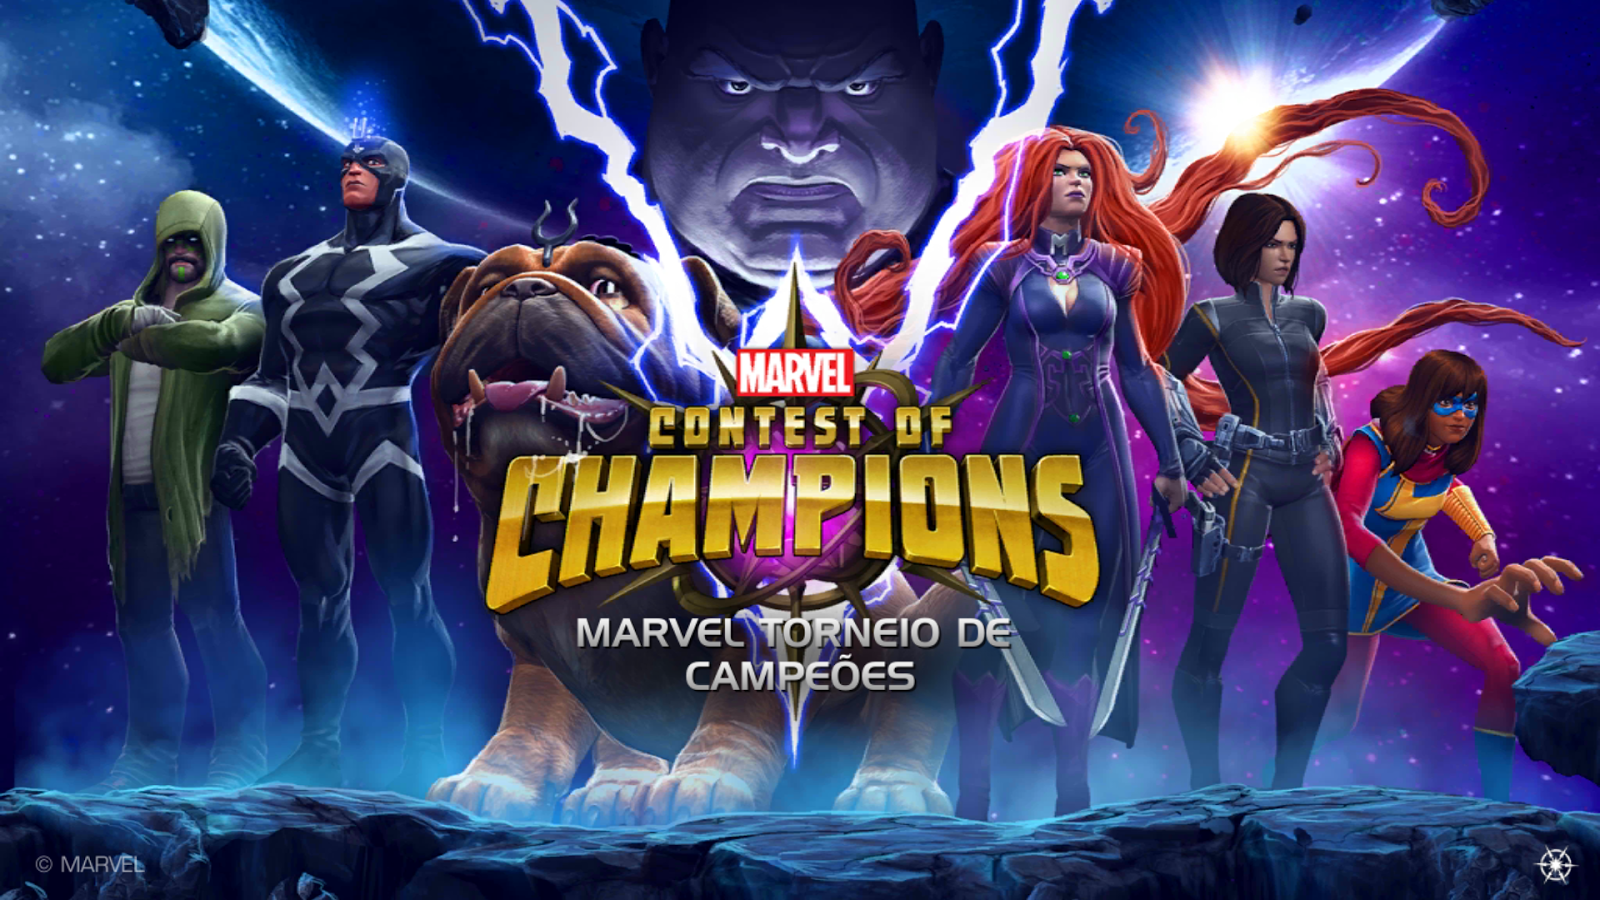 Marvel apresenta o novo herói criado para o Torneio dos Campeões